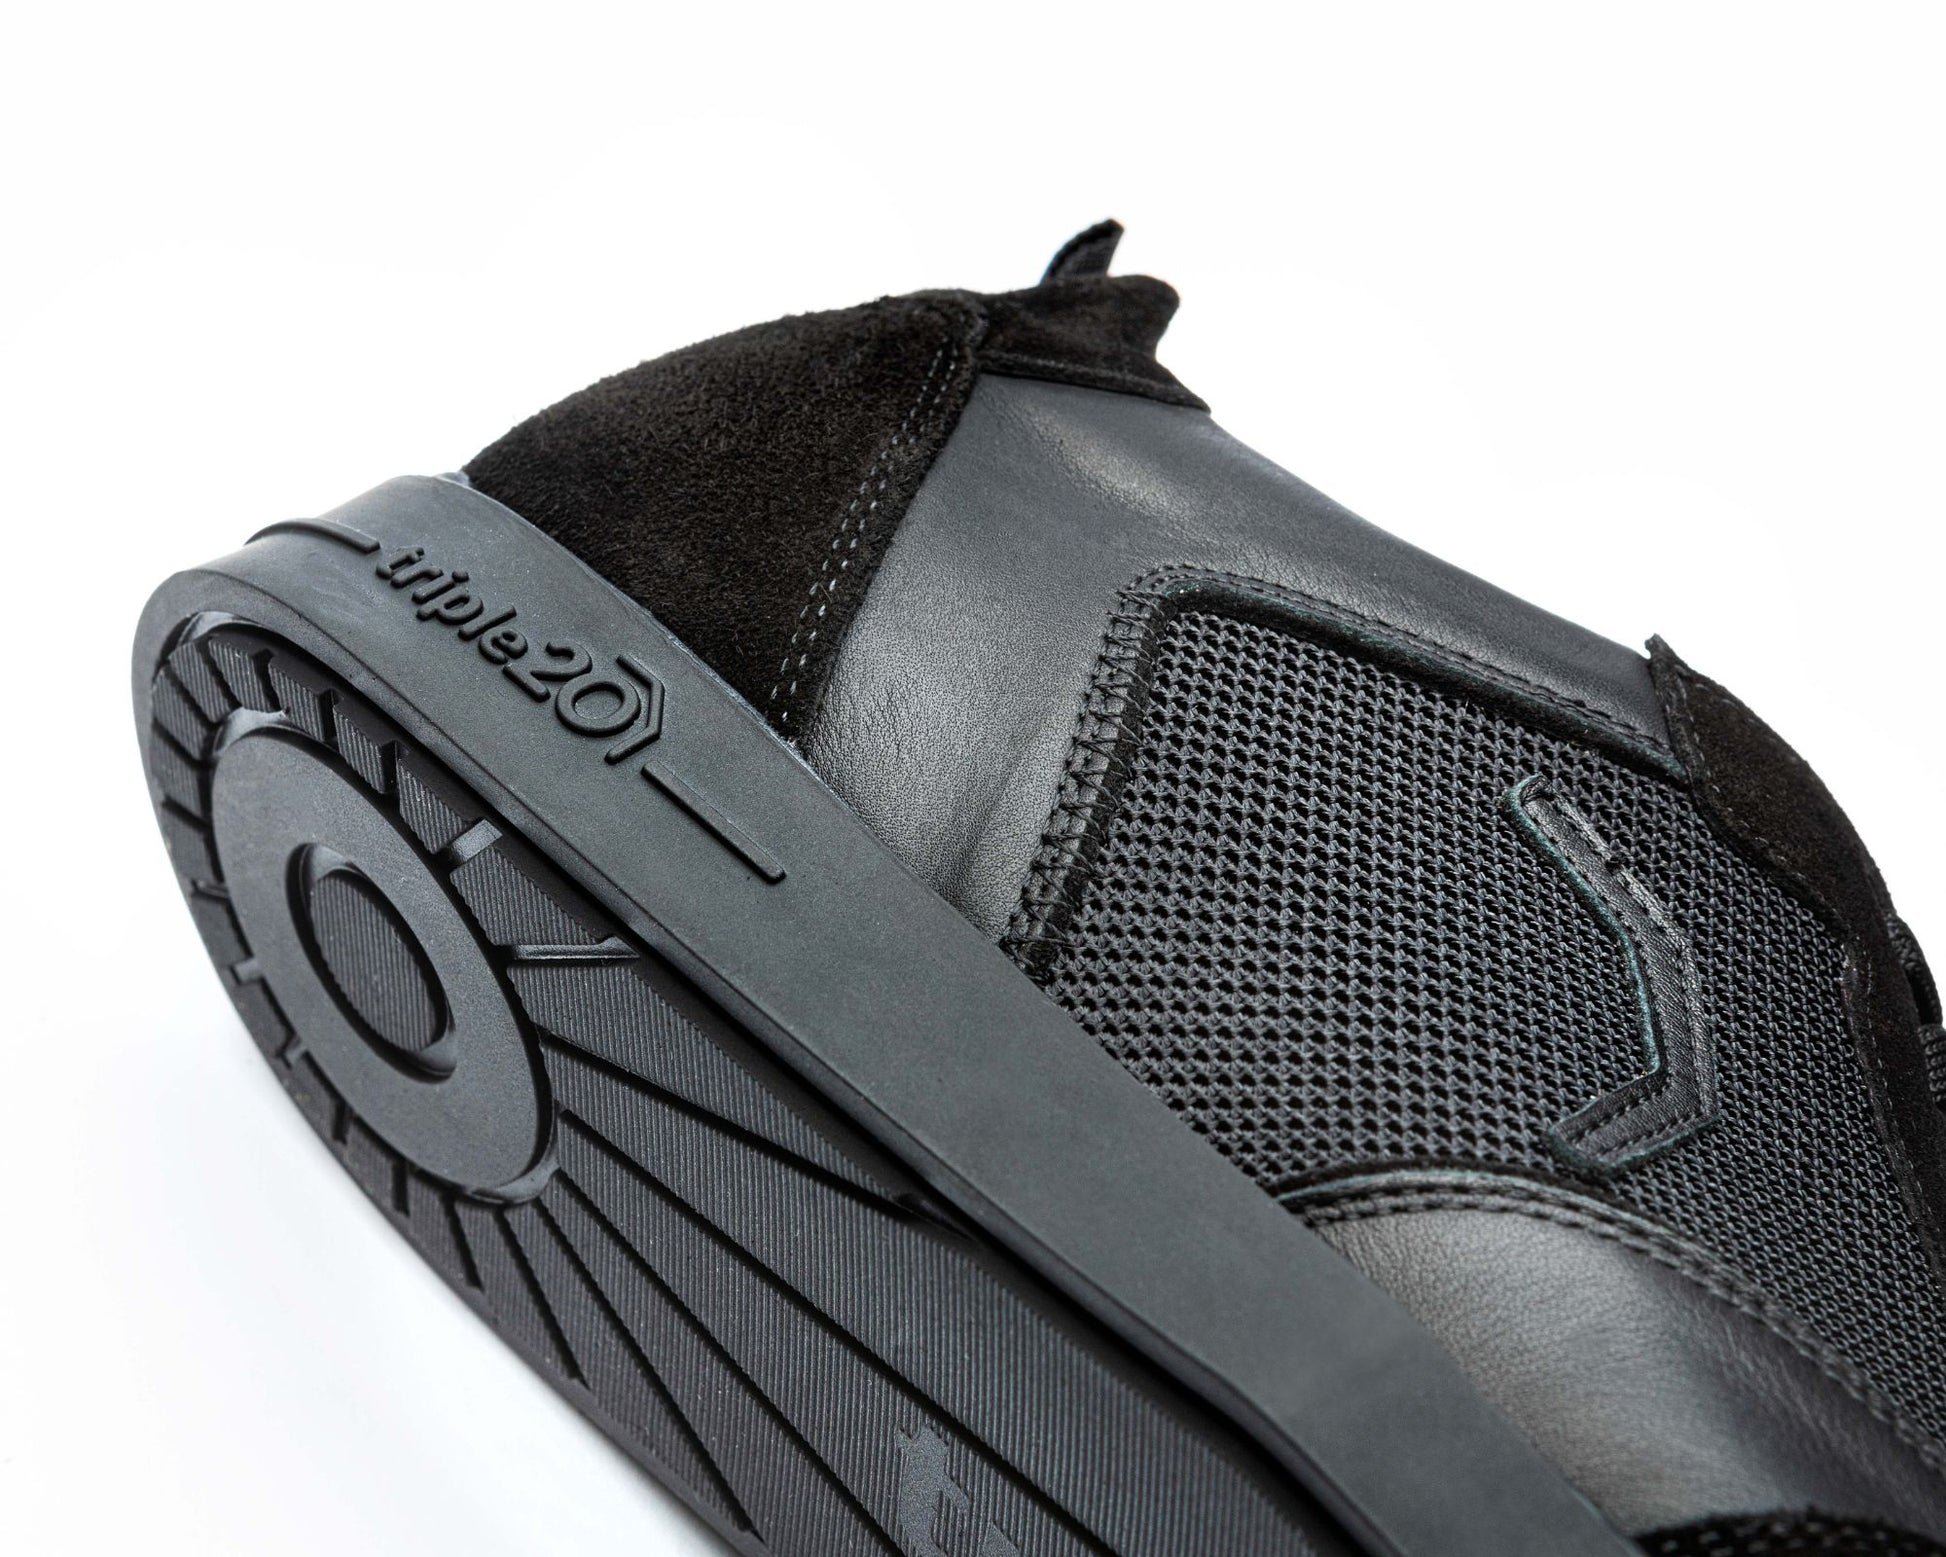 Nahaufnahme eines speziellen Dartschuhs von triple20, der komplett in schwarz gehalten ist. Der Schuh liegt auf der Seite, gut zu sehen ist der Markenschriftzug, der sich in 3D-Optik seitlich auf der Sohle befindet. Ferner lässt sich das aufwendige Design der Sohlenunterseite erahnen.